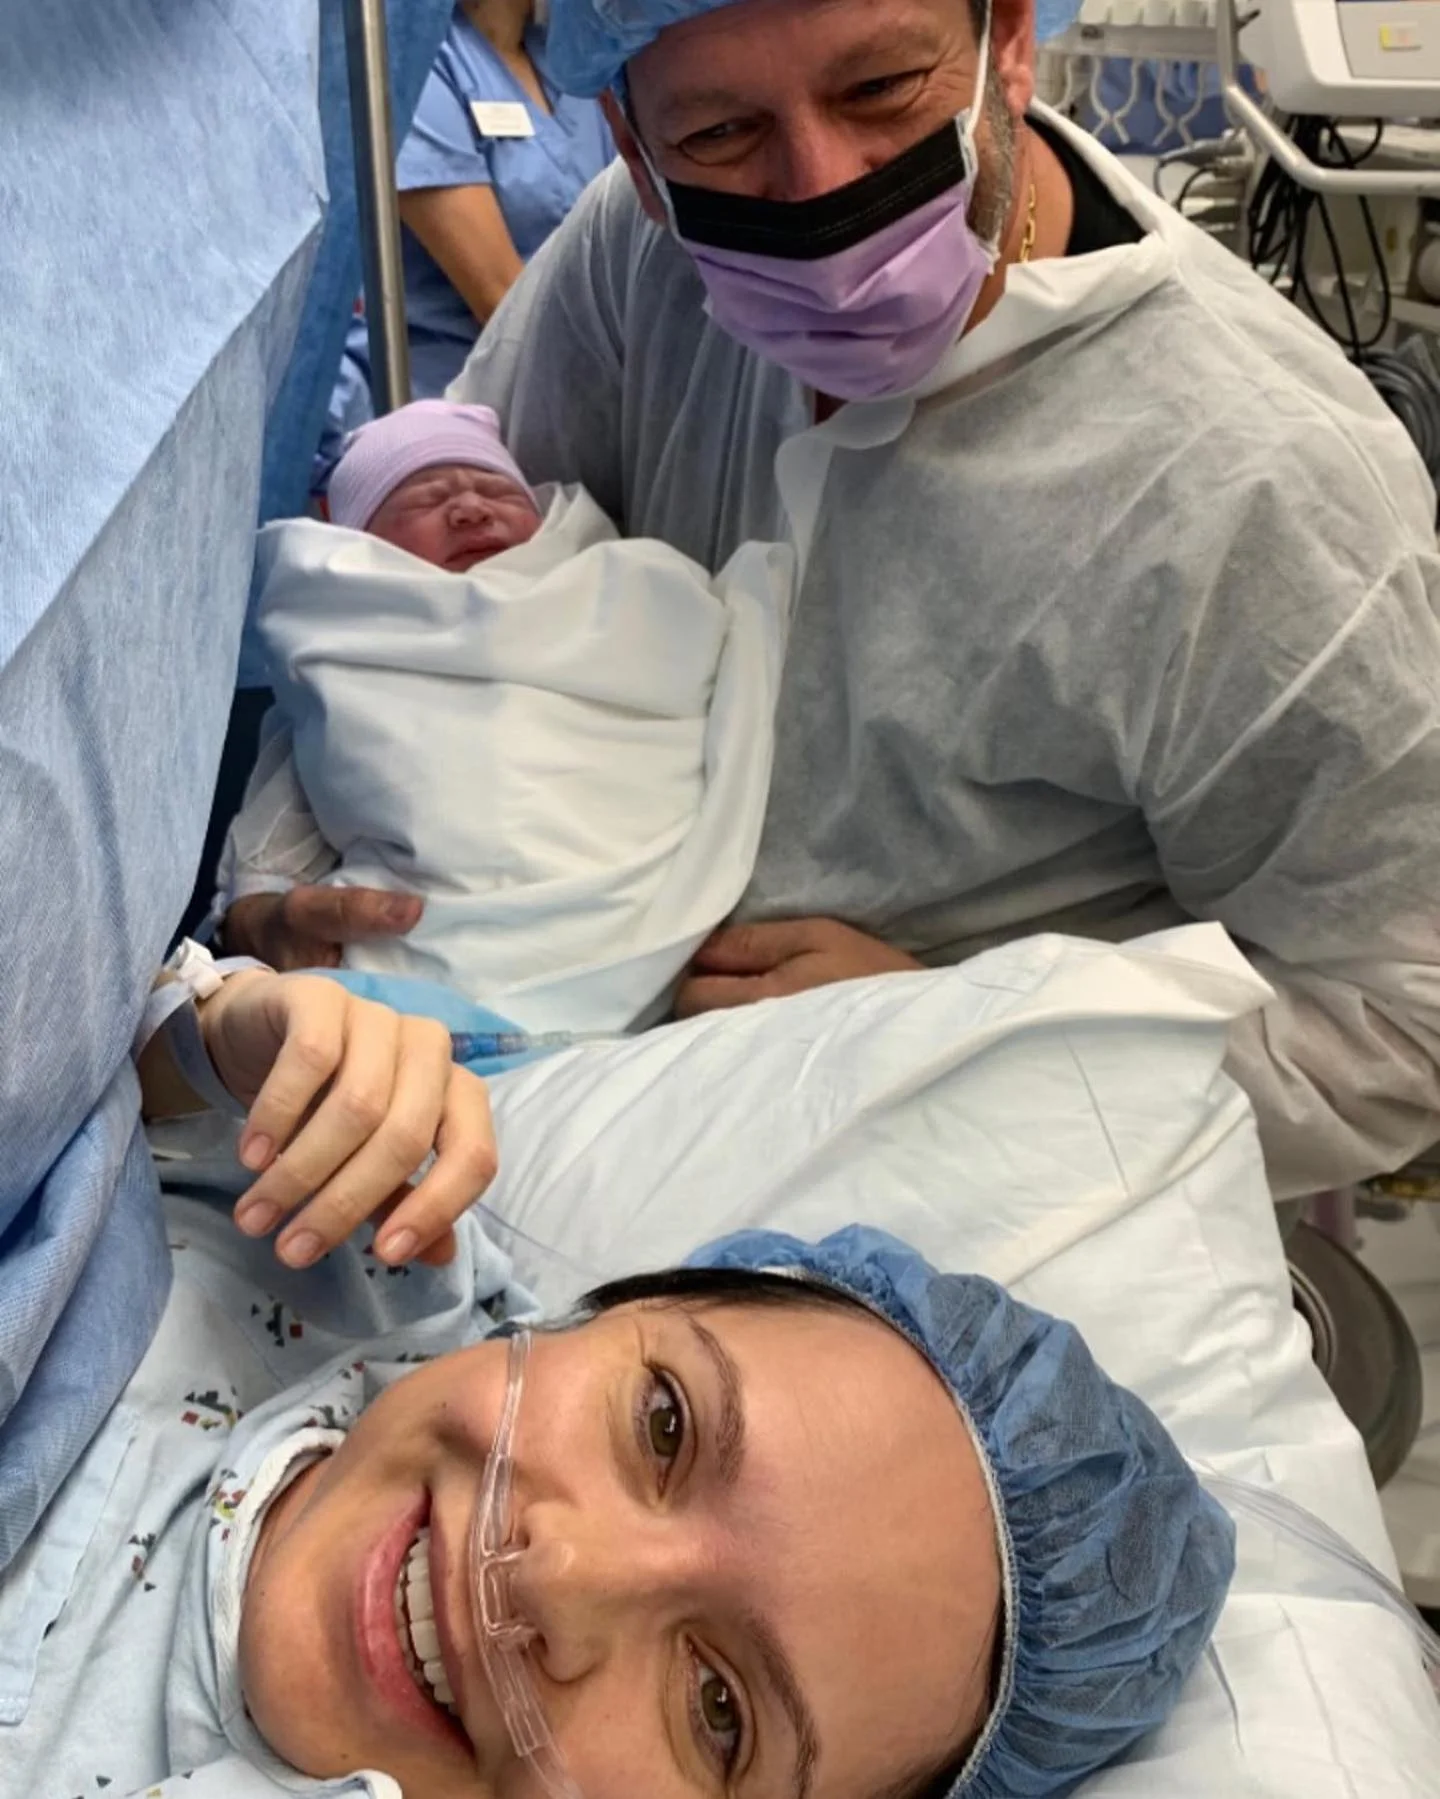 Лилия Подкопаева в третий раз стала мамой – смотри первое фото новорожденного - фото 450917